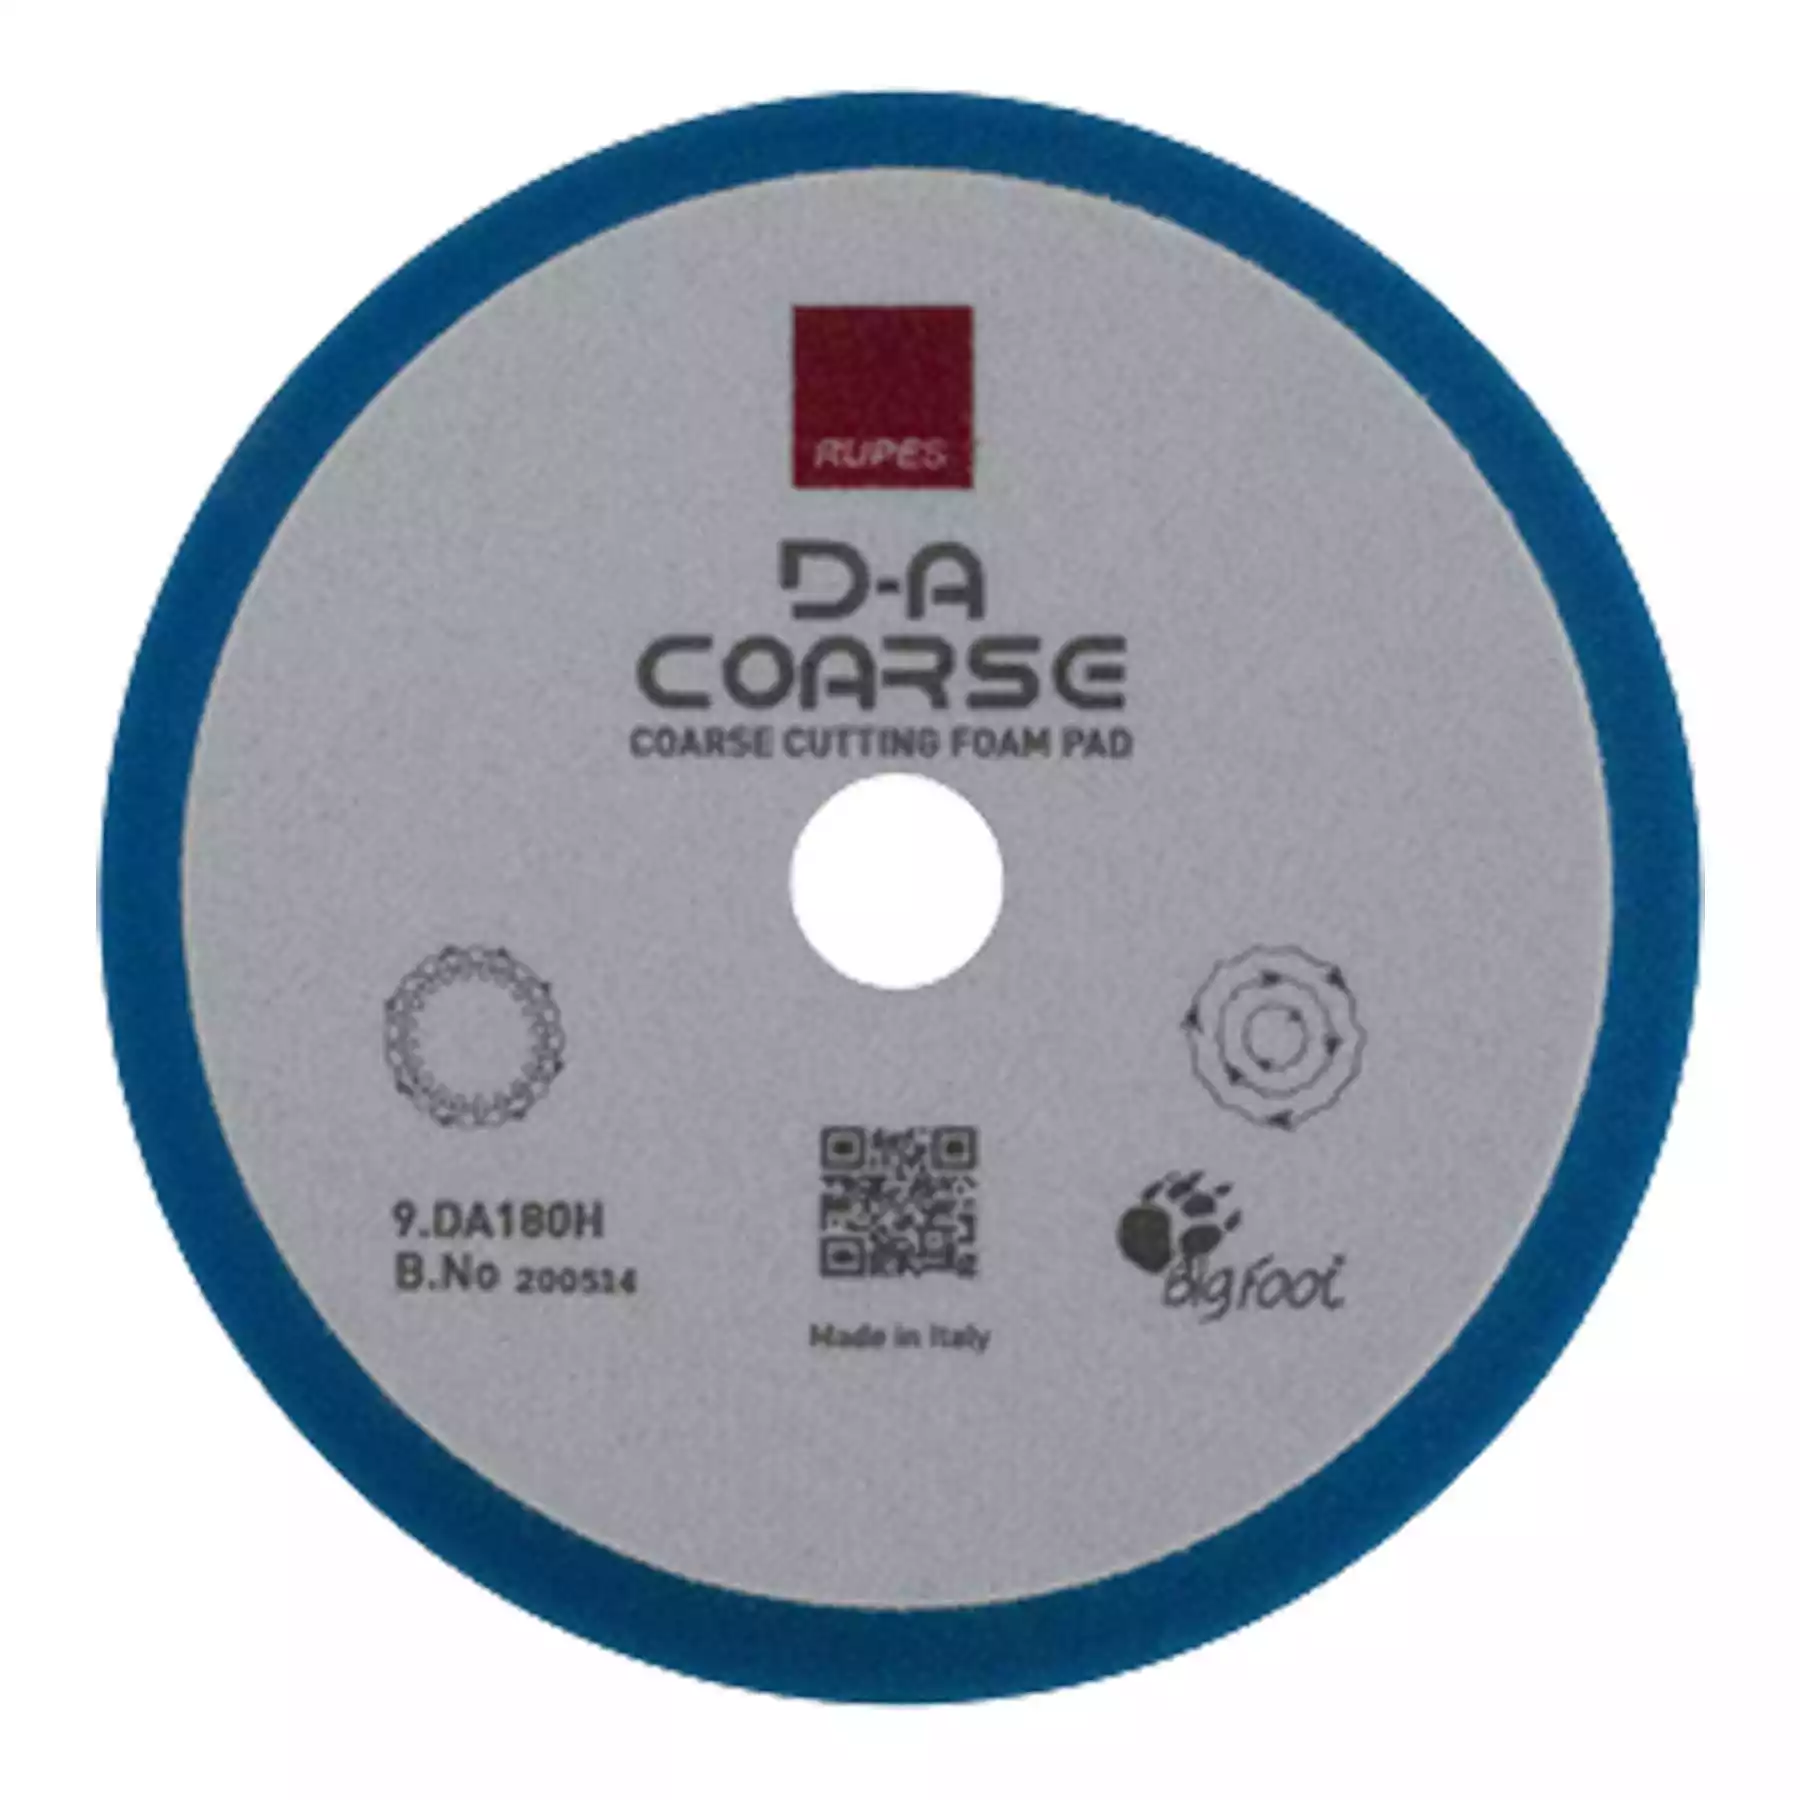 D-A Coarse Cutting Foam Pad 150/180mm (9.DA180H)